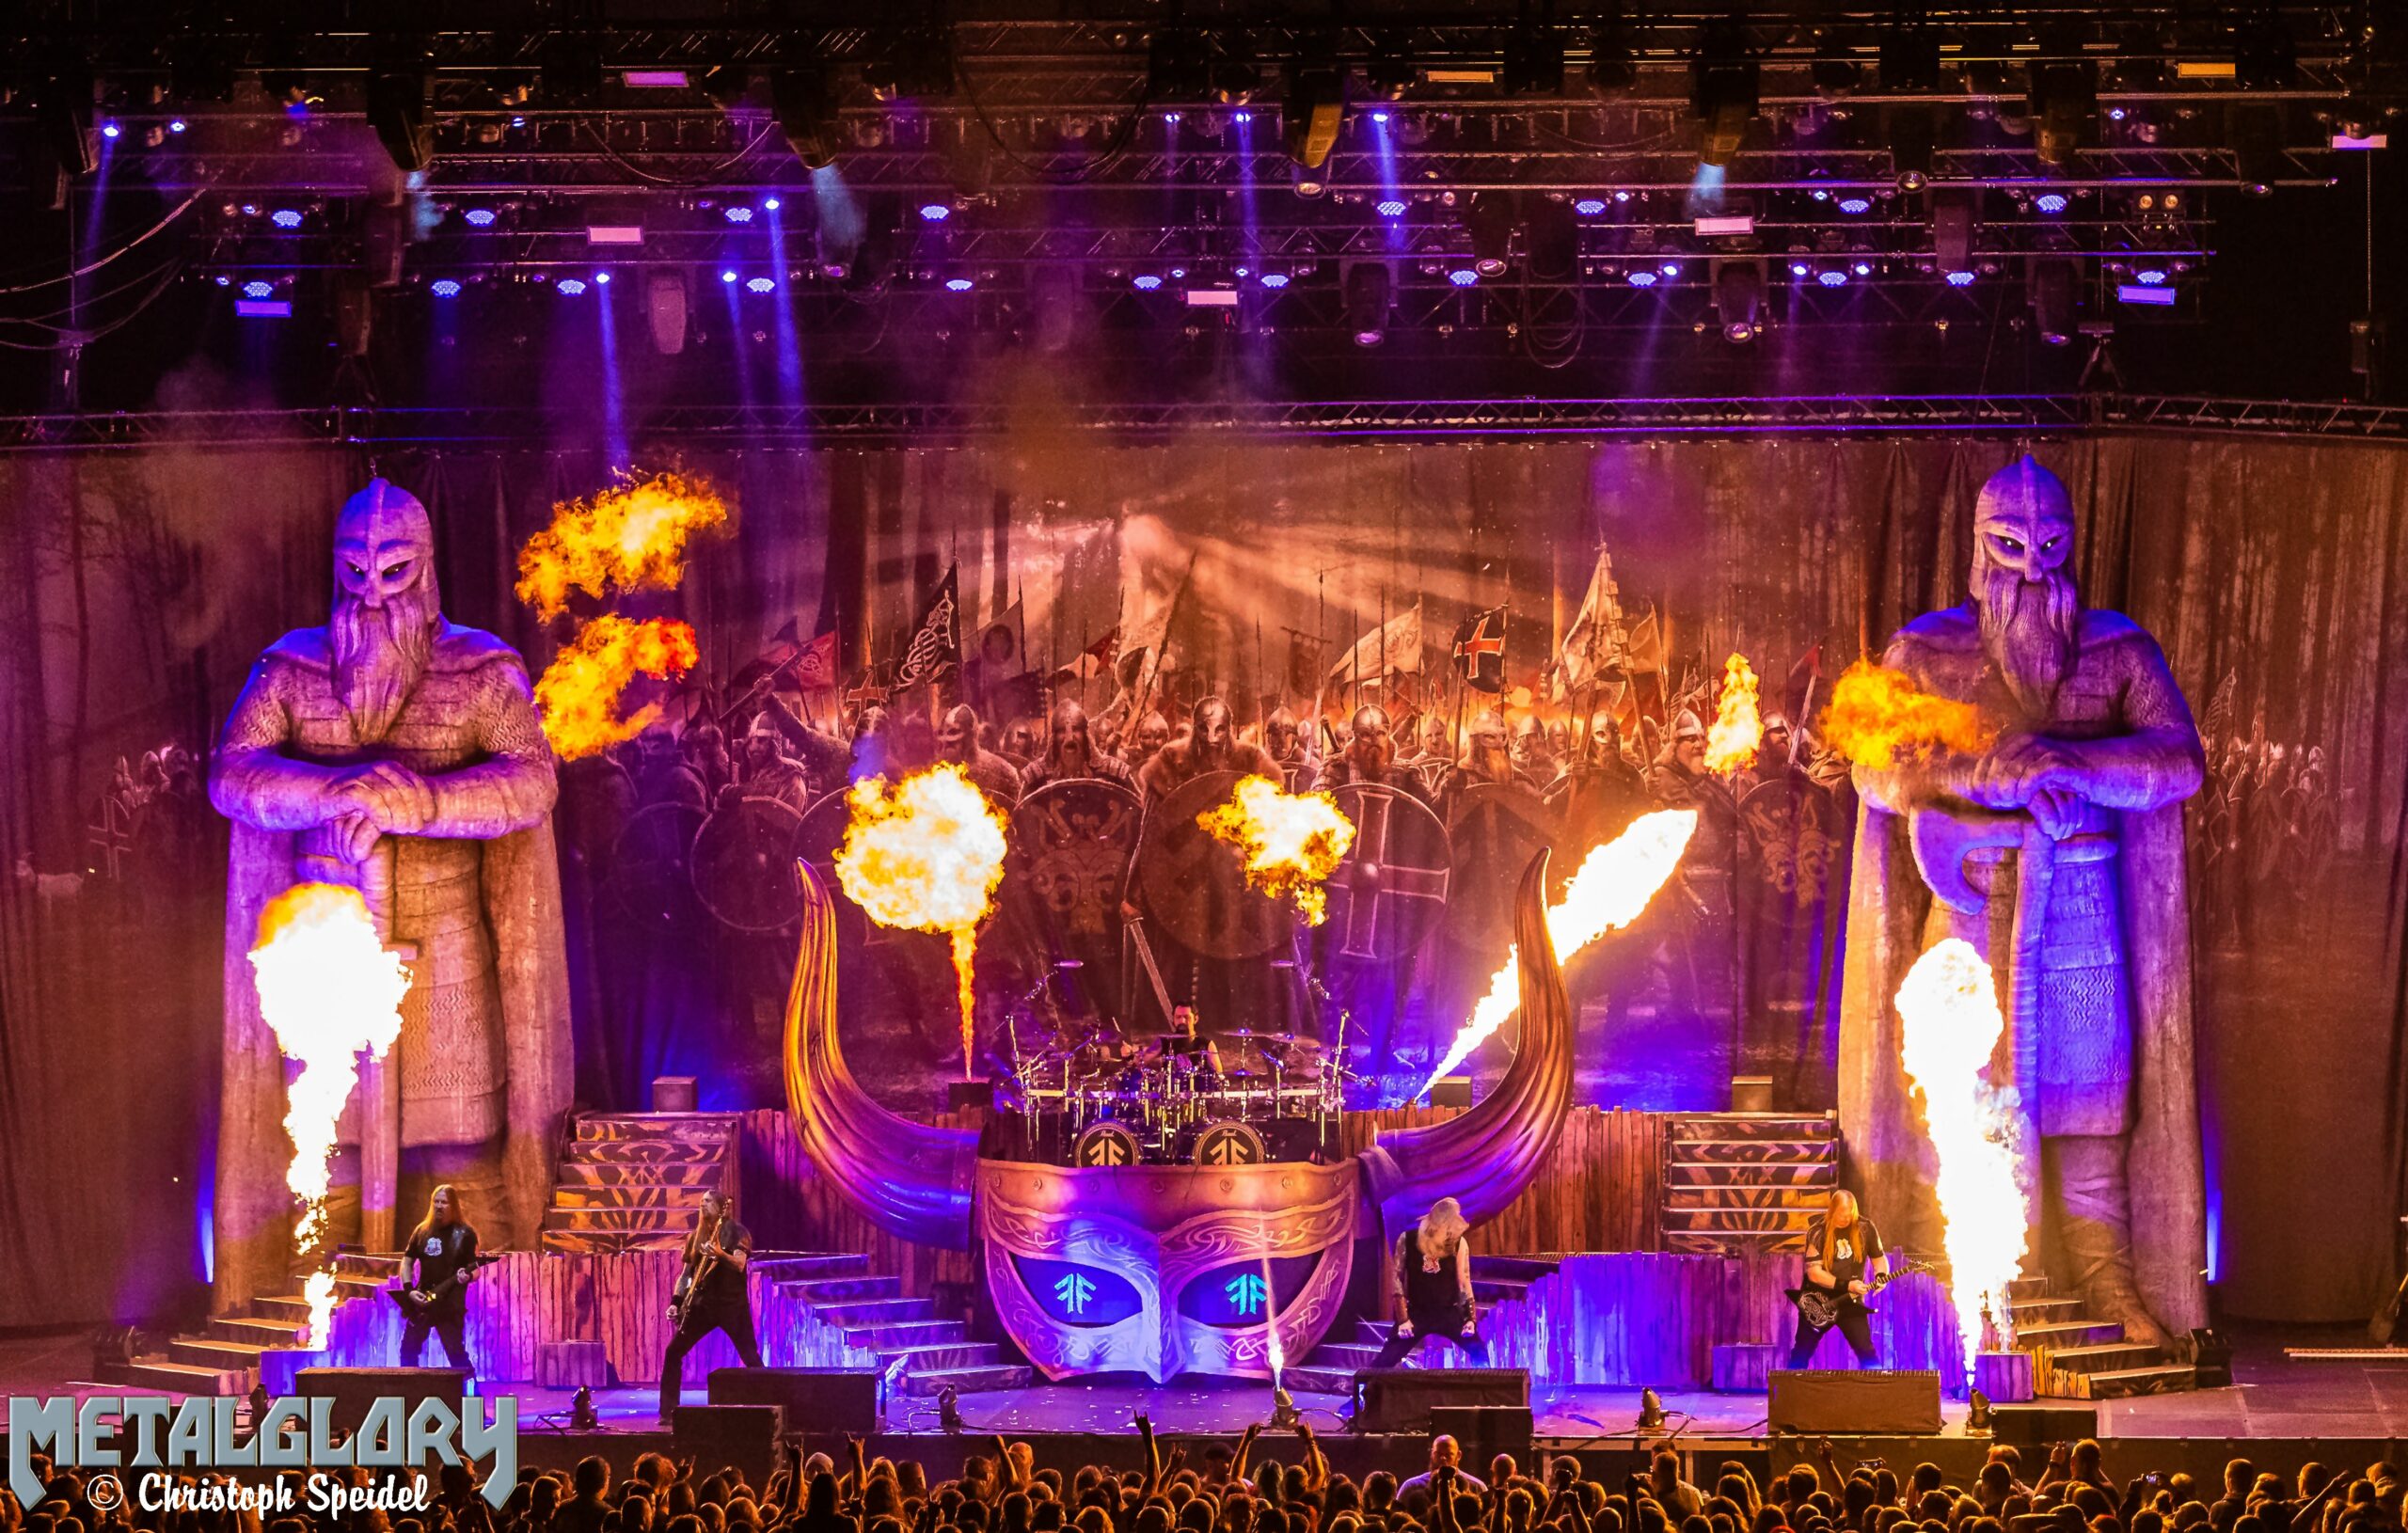 Amon Amarth & Machine Head „Vikings & Lionhearts Tour 2022“, Support The Halo Effect, 27.09.2022, Barclays Arena Hamburg